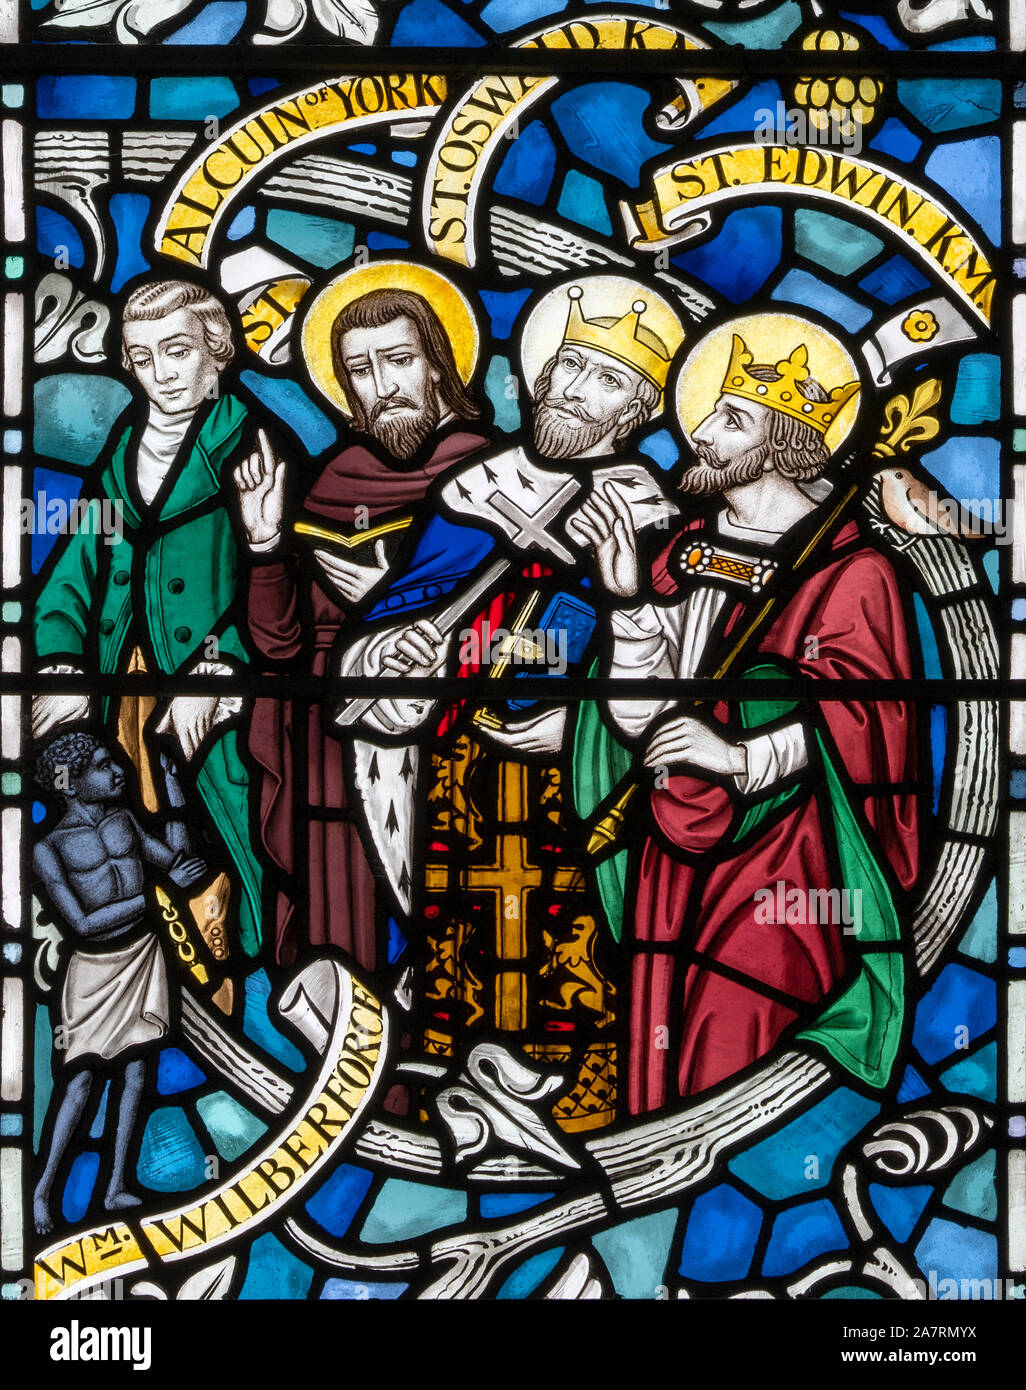 William Willberforce (MP) celebra junto a un teólogo cristiano medieval y dos reyes de Northumbria, la Iglesia de Todos Los Santos, Rudston, North Yorks. En el Reino Unido. Foto de stock